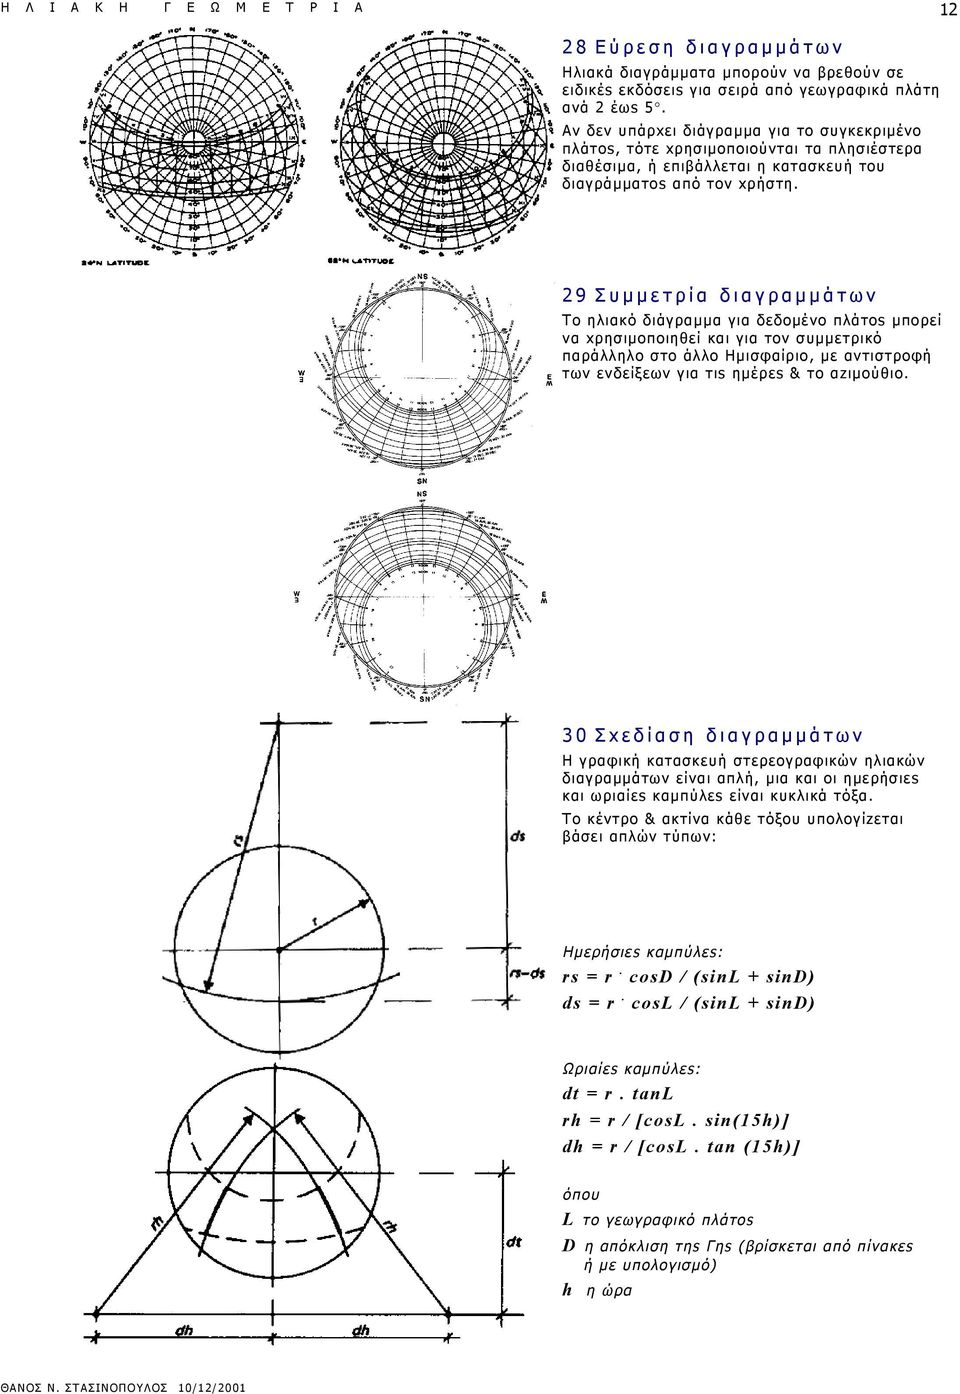 29 Συμμετρία διαγραμμάτων Το ηλιακό διάγραμμα για δεδομένο πλάτοs μπορεί να xρησιμοποιηθεί και για τον συμμετρικό παράλληλο στο άλλο Ημισφαίριο, με αντιστροφή των ενδείξεων για τιs ημέρεs & το